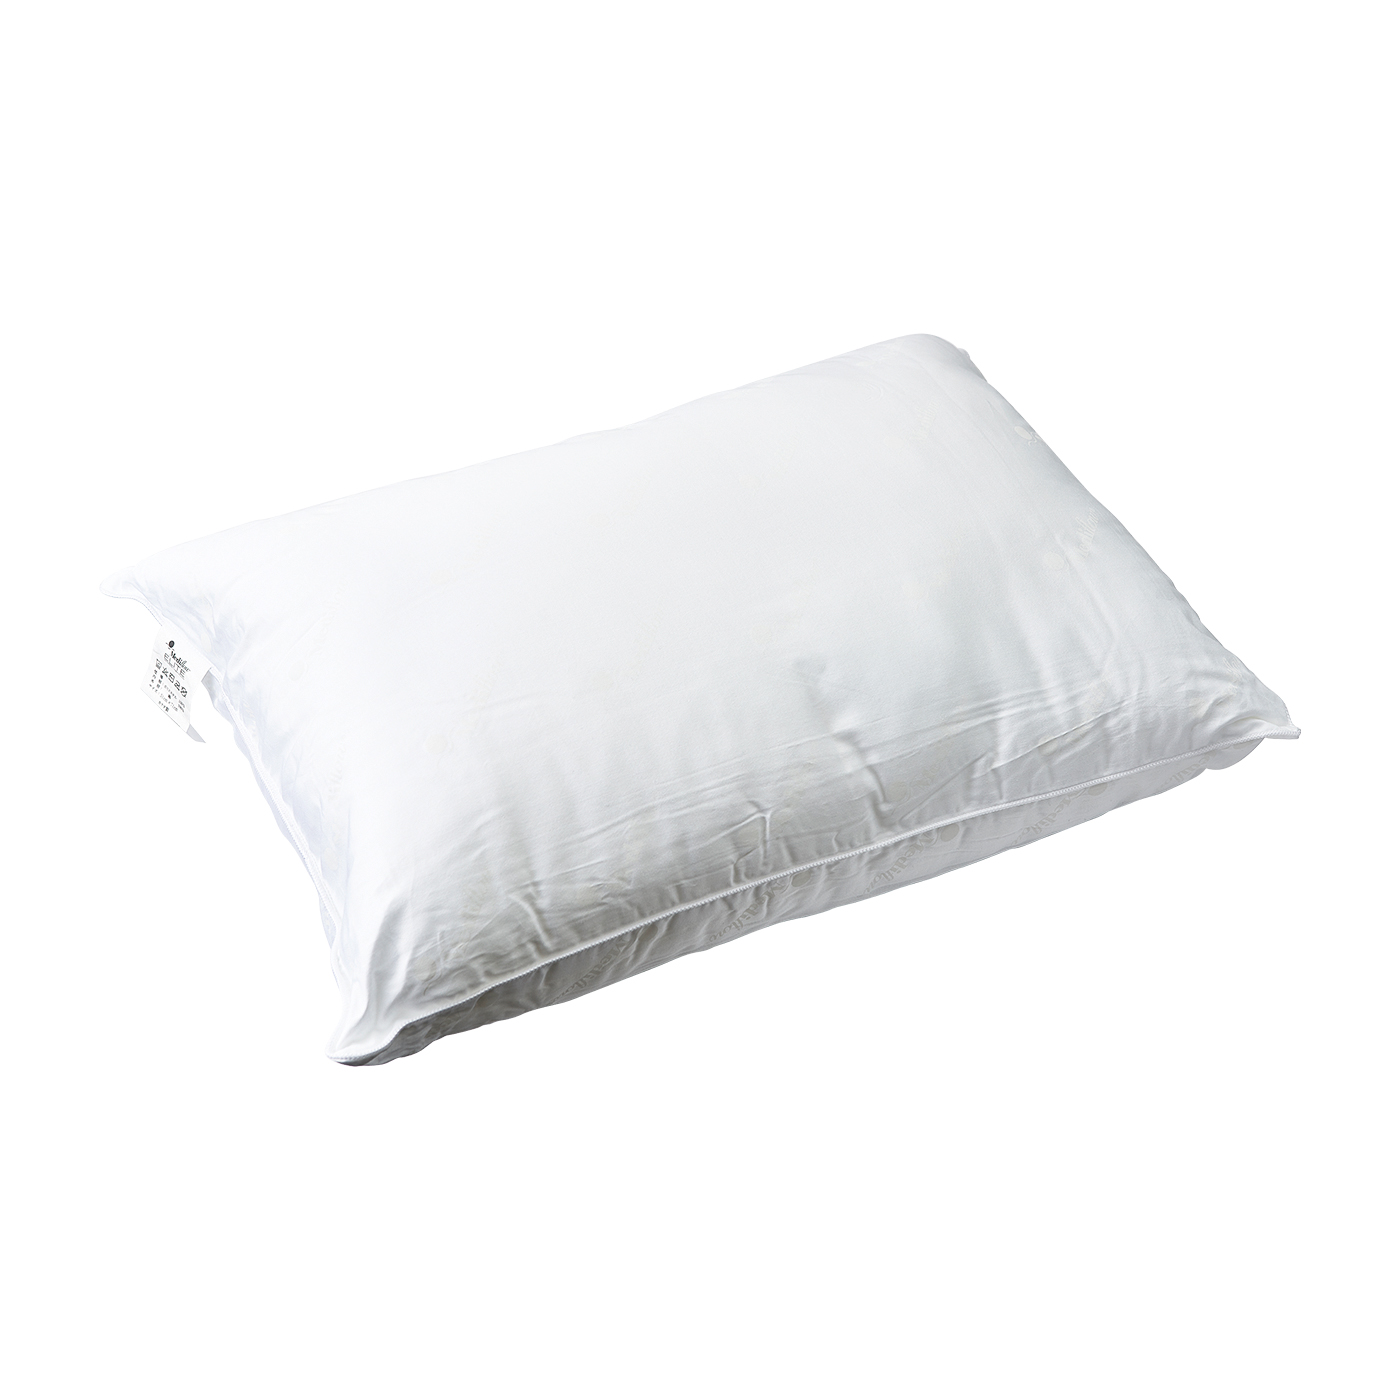 医道の日本社 Water base fiber pillowを他商品と比較！口コミや評判を実際に使ってレビューしました！ | mybest